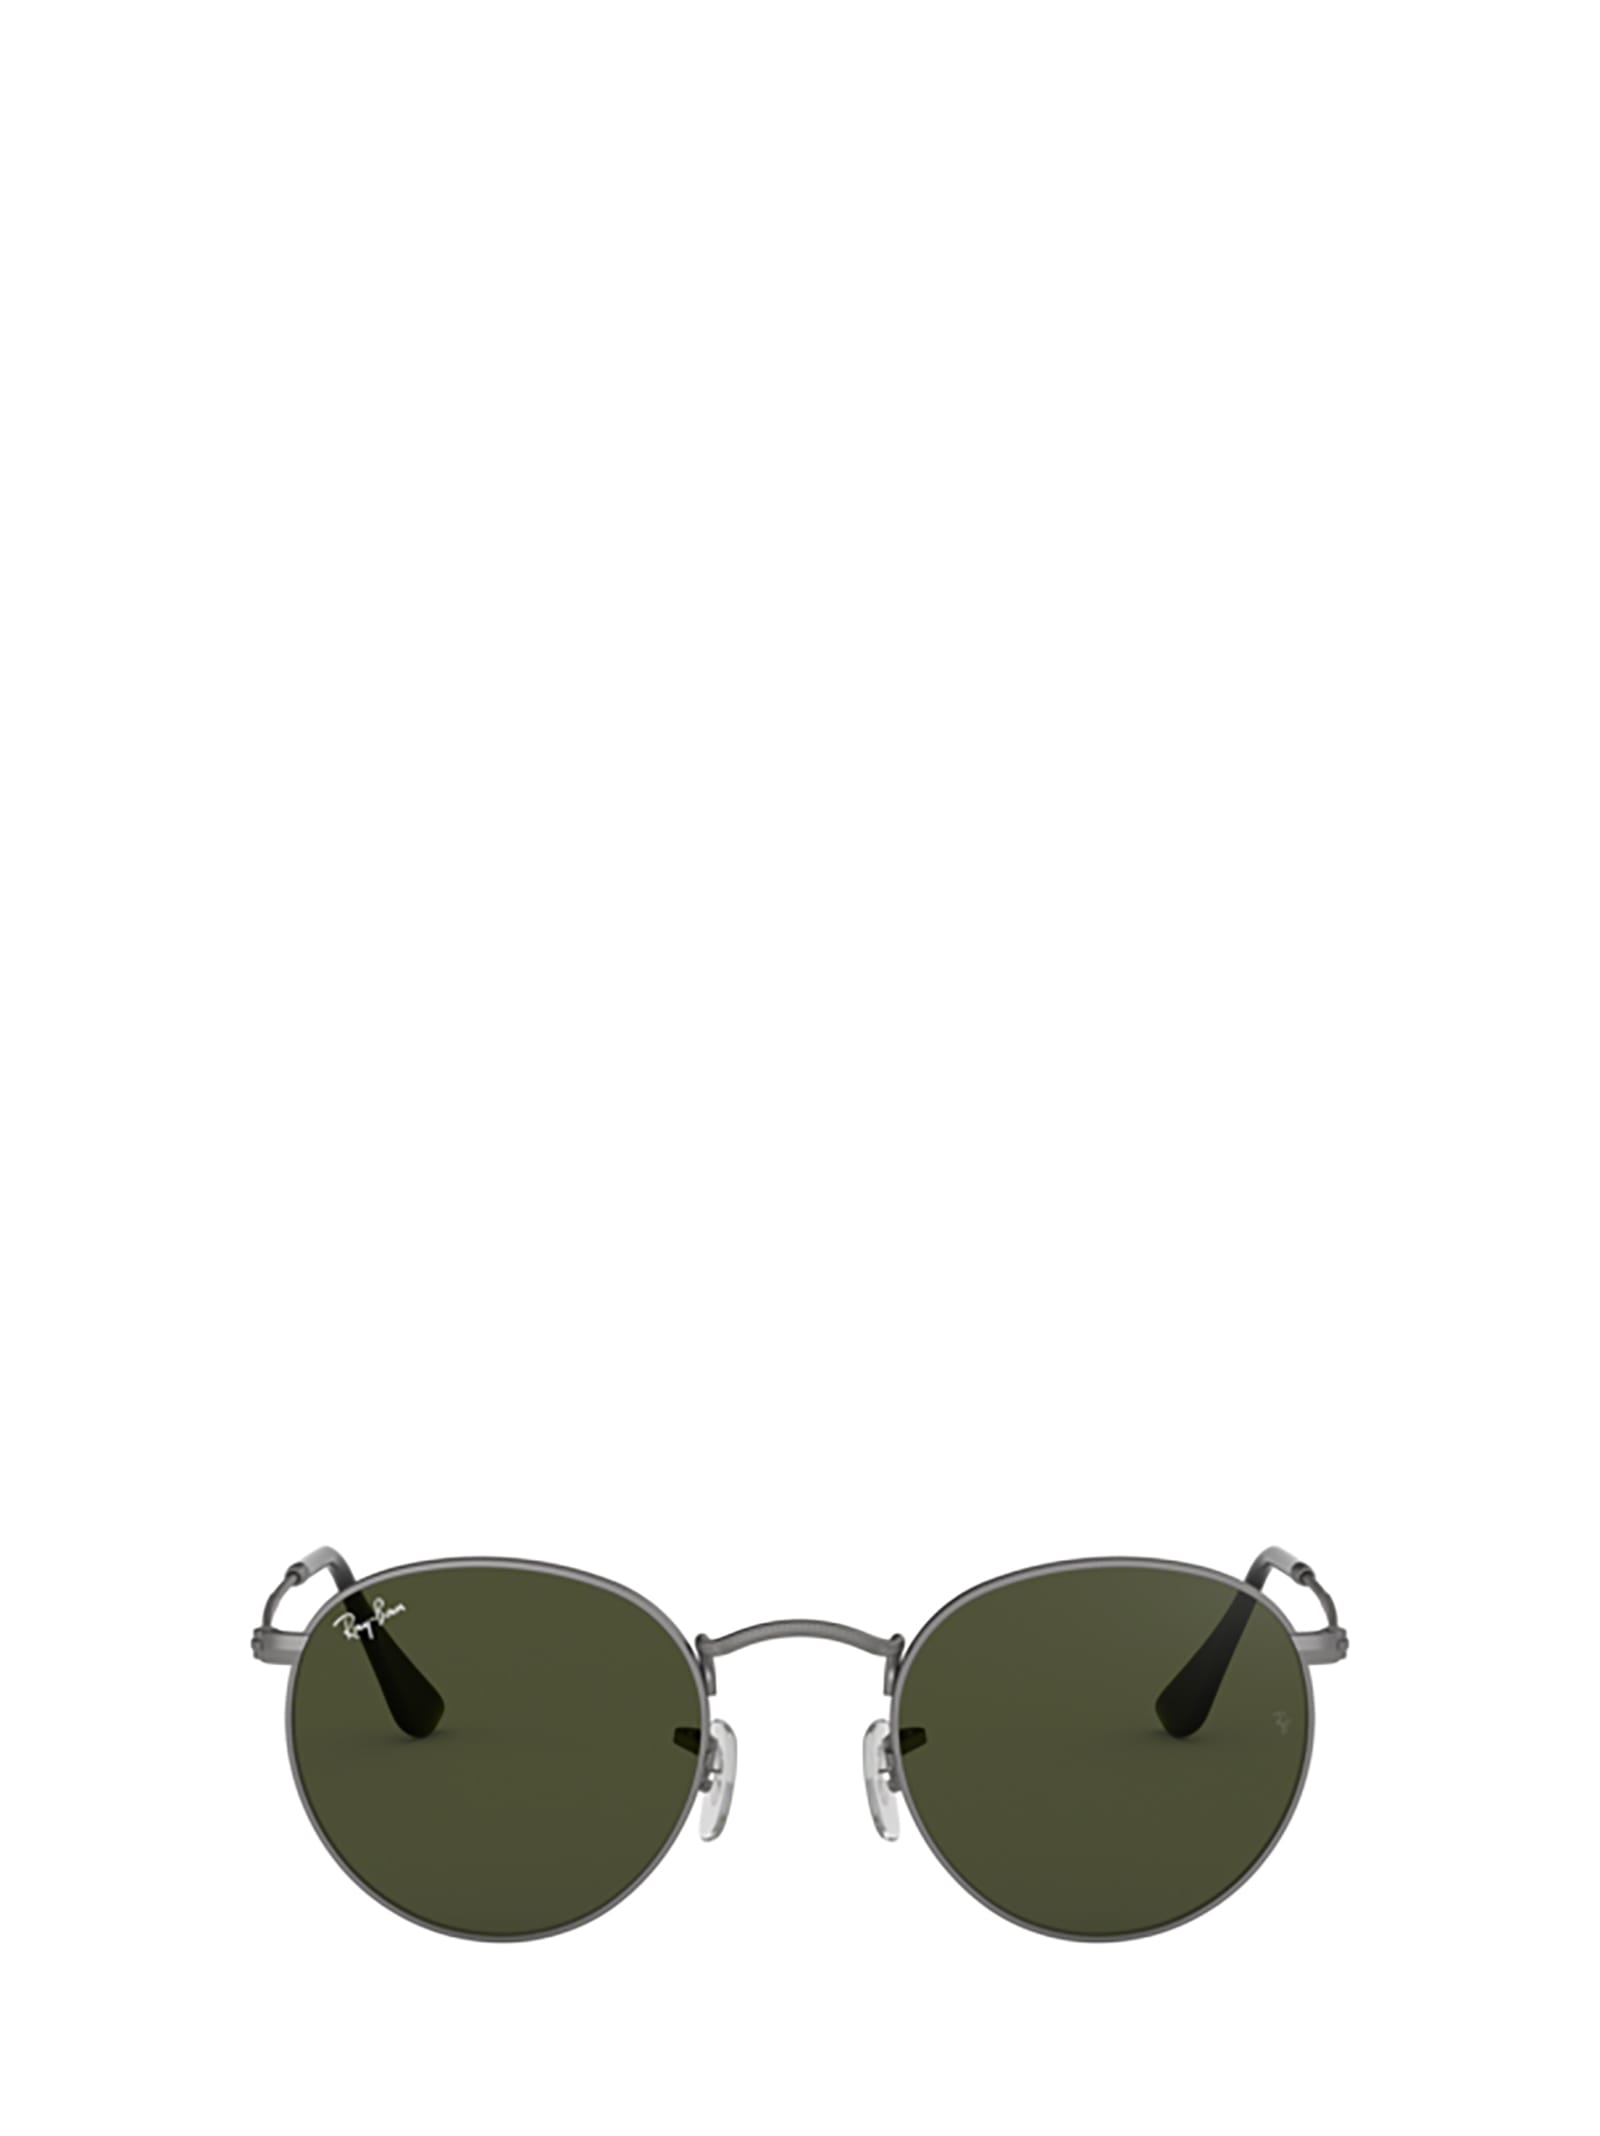 Ray-Ban Ray-ban Rb3447 Matte Gunmetal Sunglasses